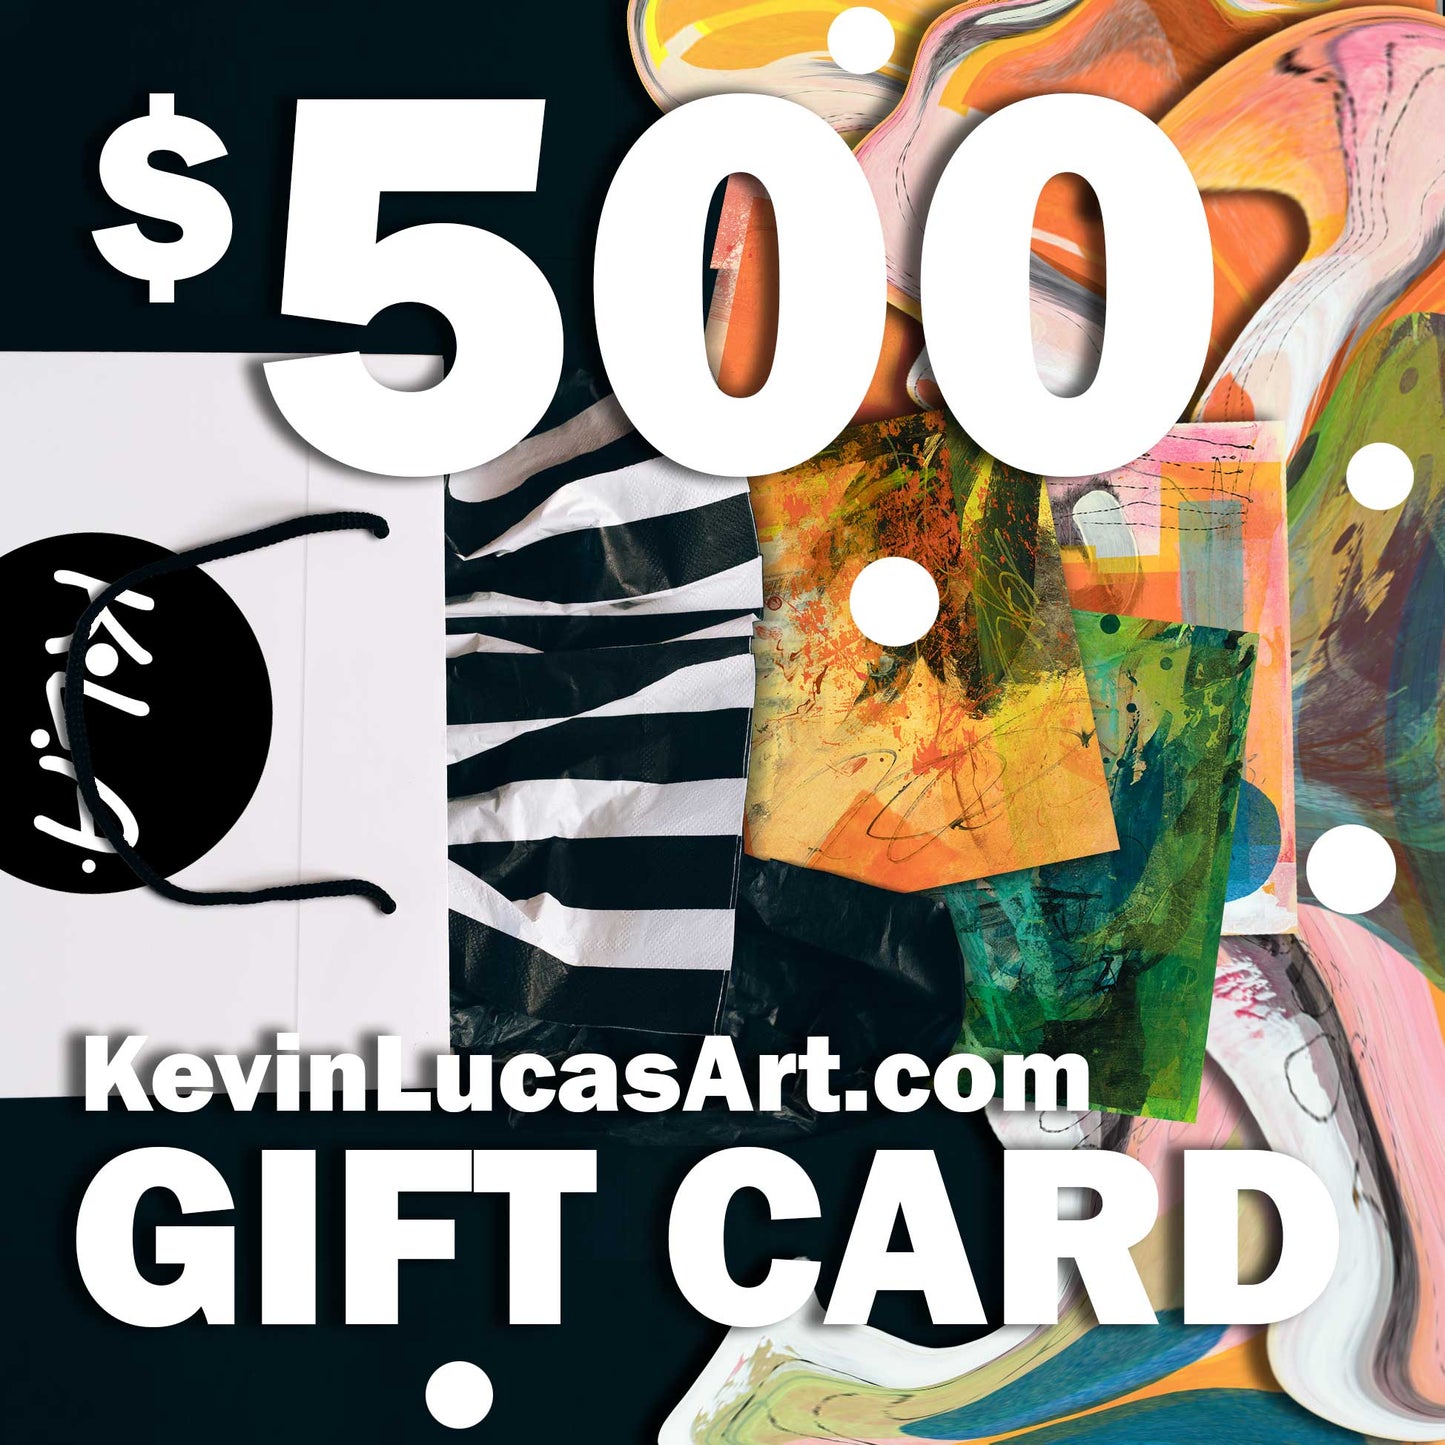 KLA $500 Gift Card